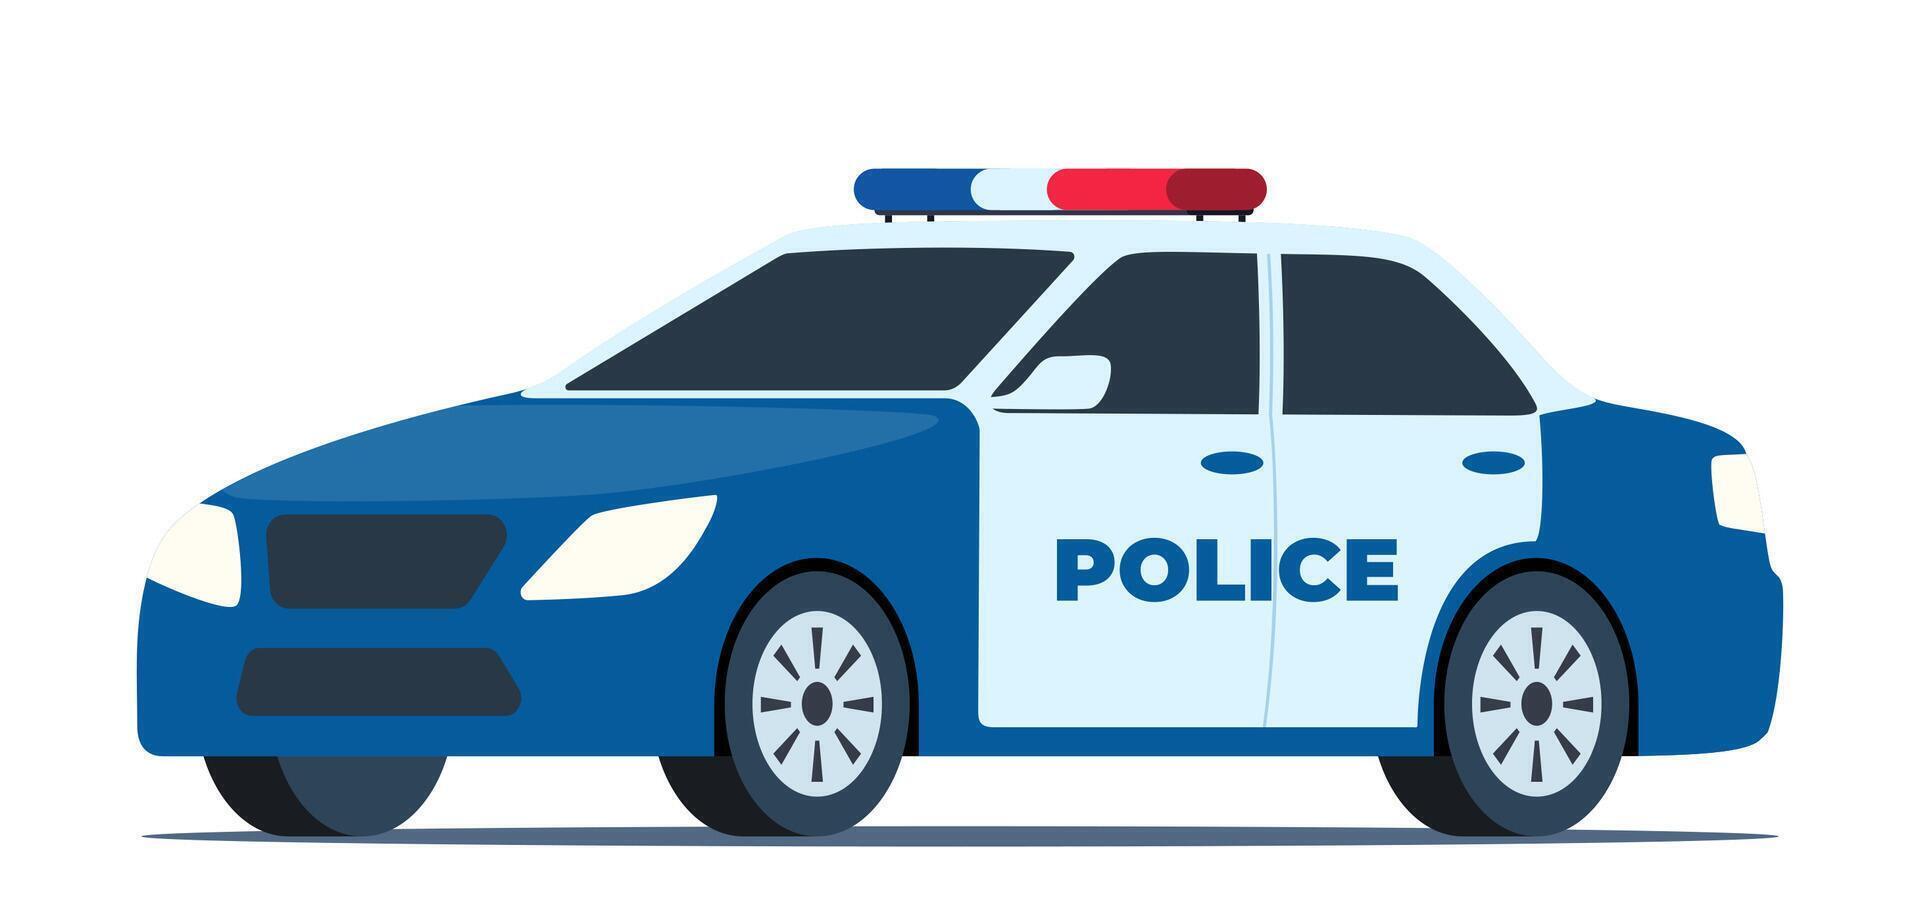 Politie auto. patrouille officieel voertuig, politieagent auto- jacht en achtervolging criminelen. kant visie. vector illustratie.